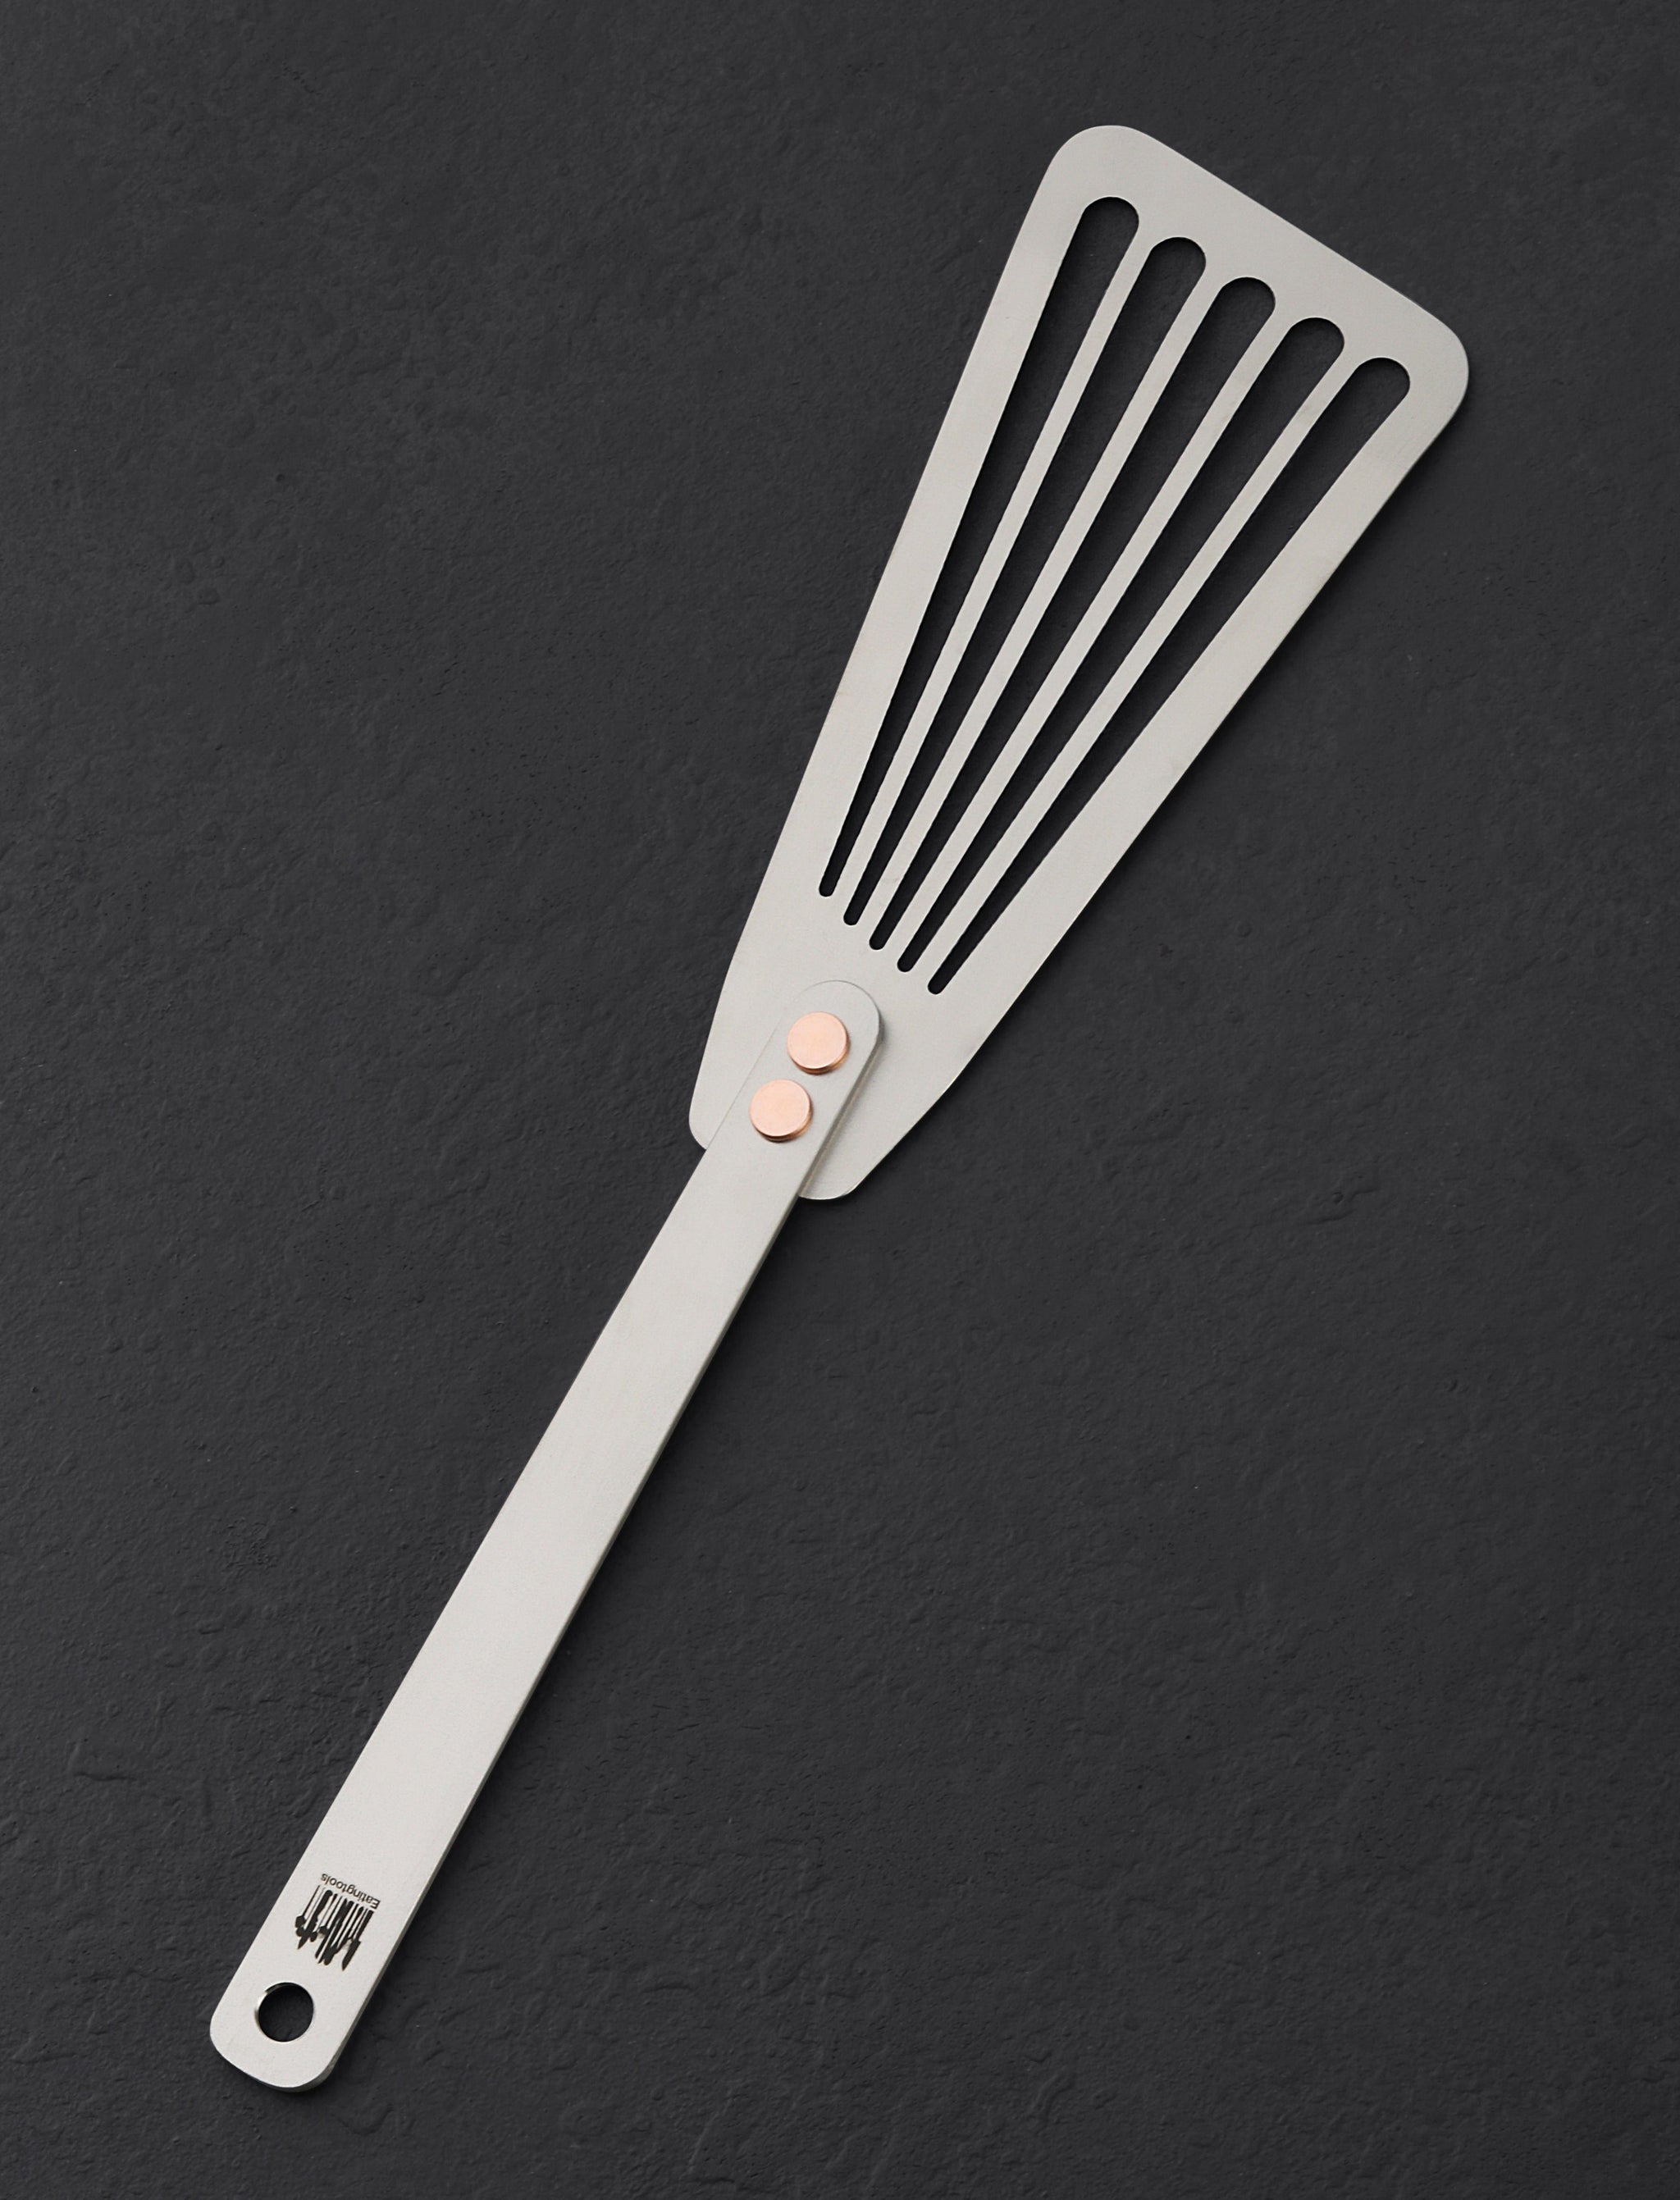 https://eatingtools.com/cdn/shop/files/spatulas-ben-tendick-oregon-tispats-titanium-fish-spatula-43020361040147.jpg?v=1693333628&width=2048